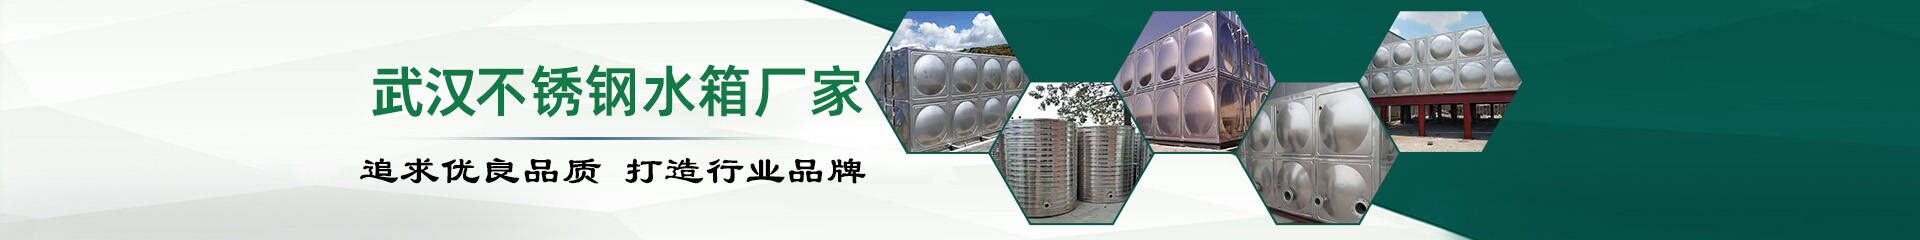 产品分类_武汉不锈钢水箱生产厂家